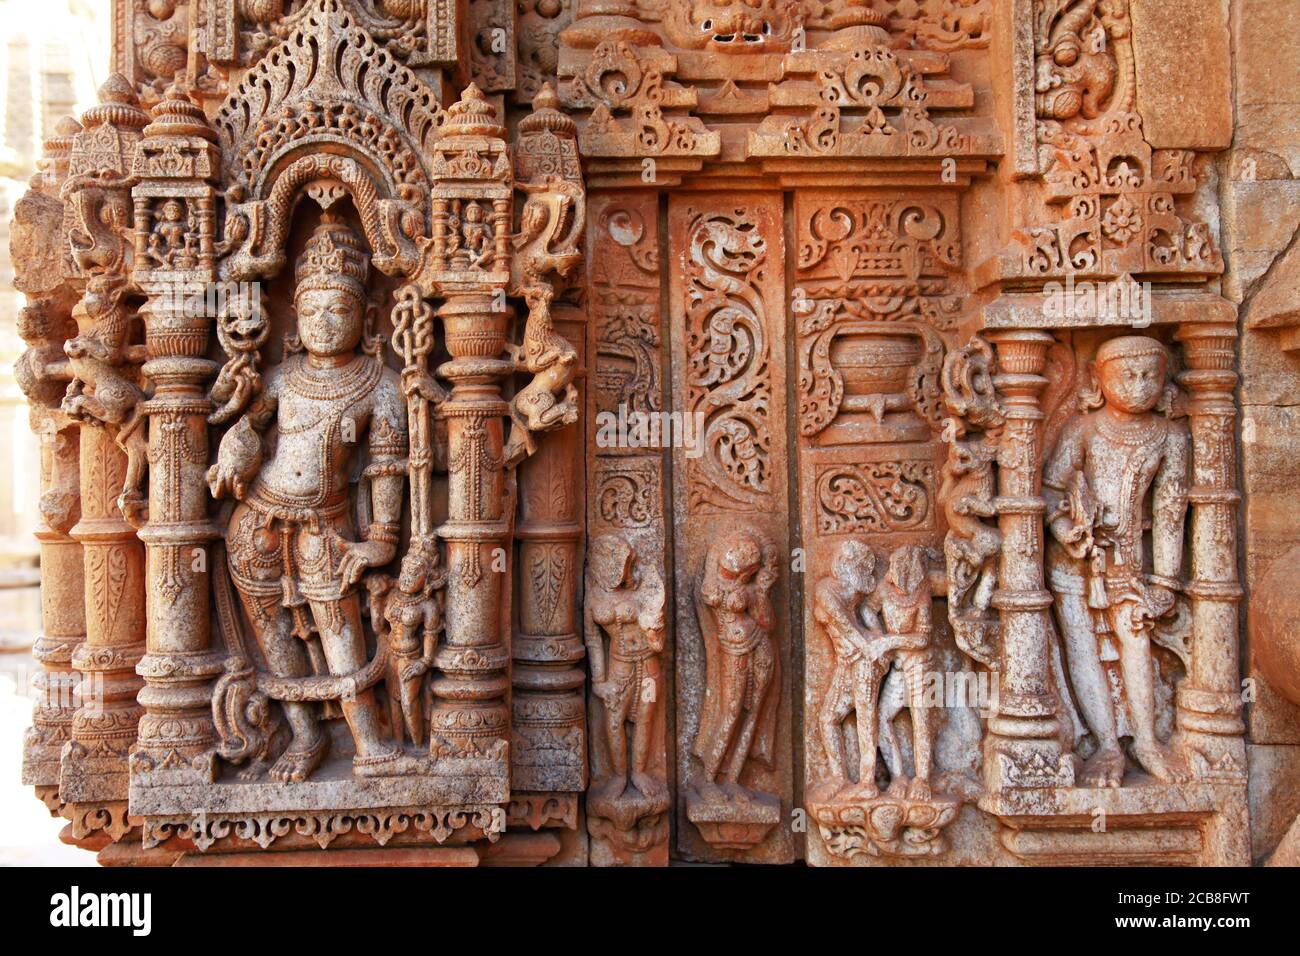 Erstaunliche Steinschnitzereien im indischen Tempel Sahastra Bahu (SAS-Bahu) in Nagda, Udaipur, Rajasthan, Indien. Stockfoto